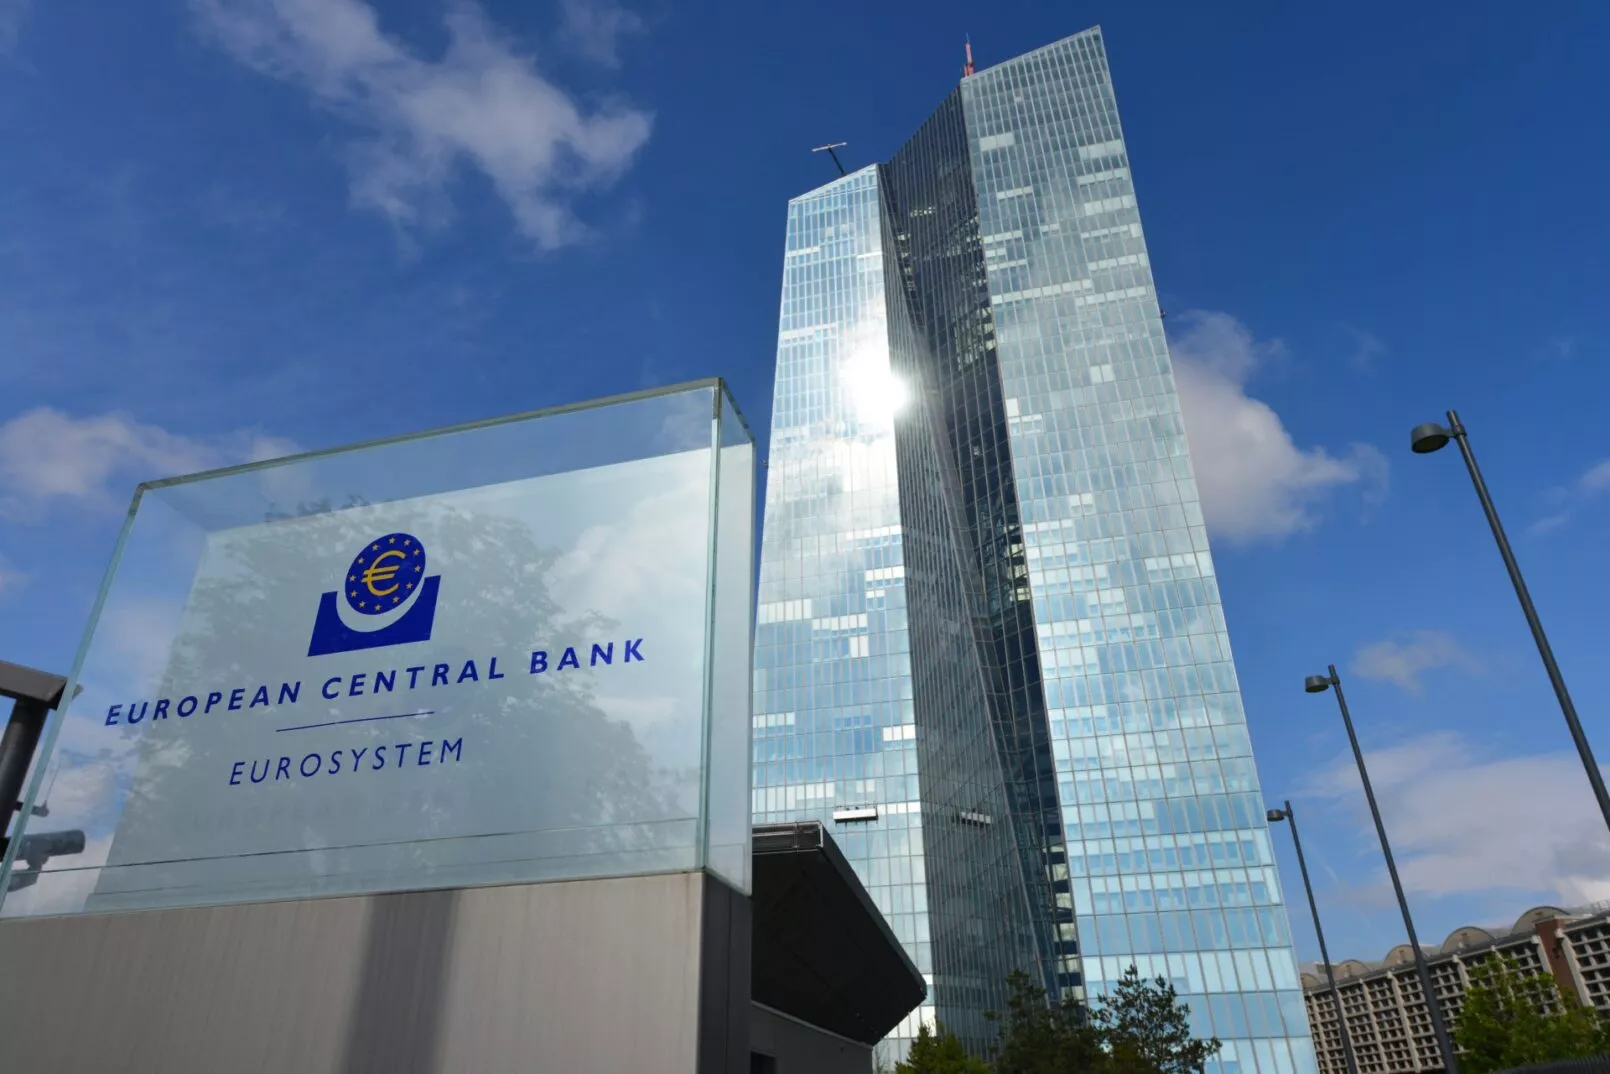 European Central Bank (ECB)